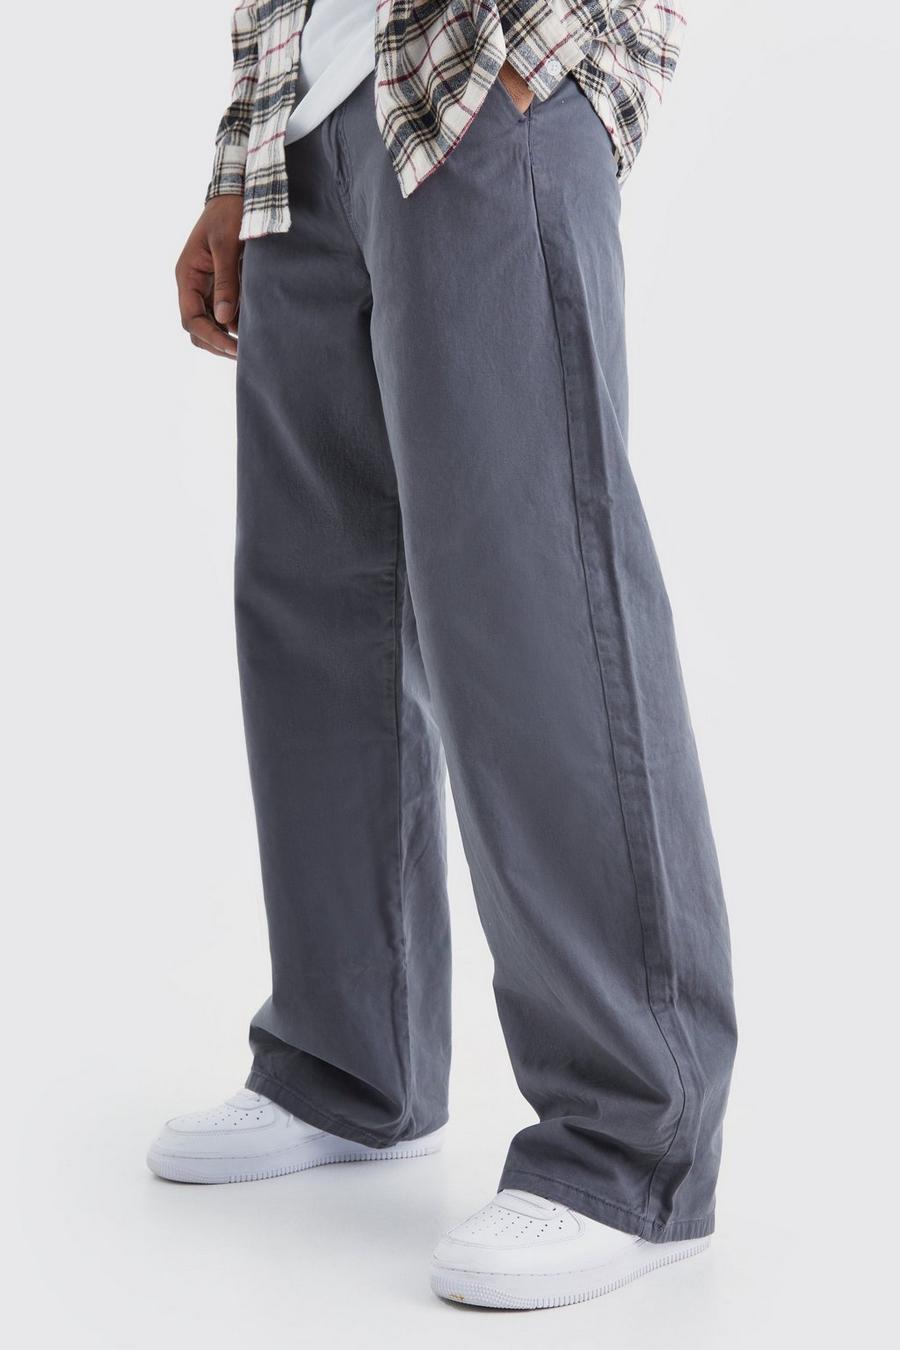 Pantaloni Chino Tall a calzata ampia, Charcoal